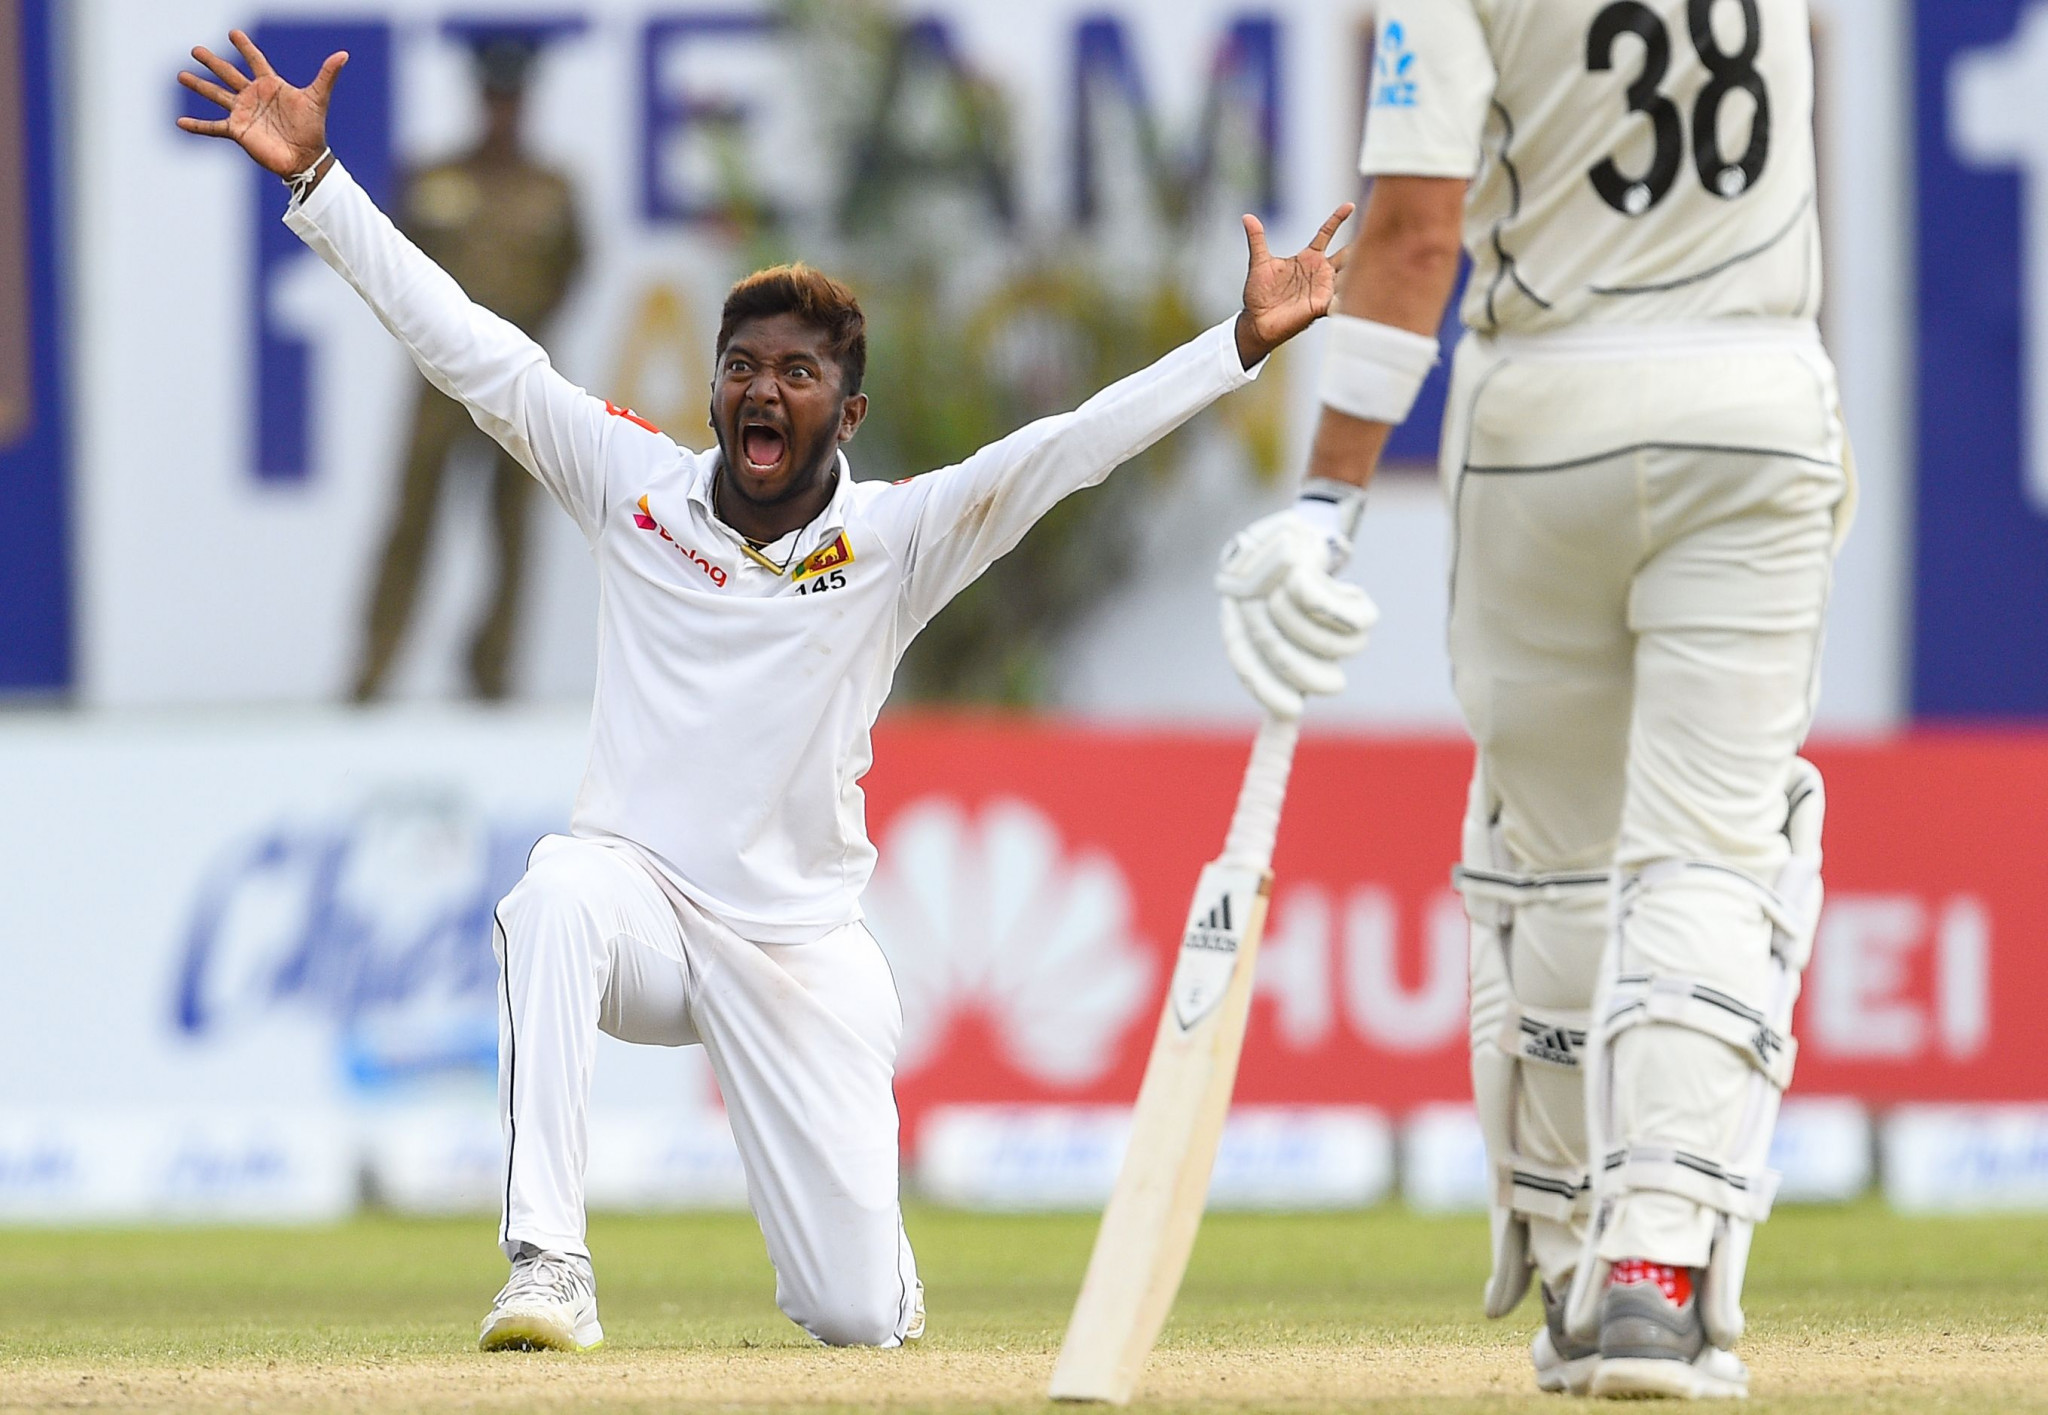  Akila Dananjaya has taken 33 Test match wickets ©Getty Images